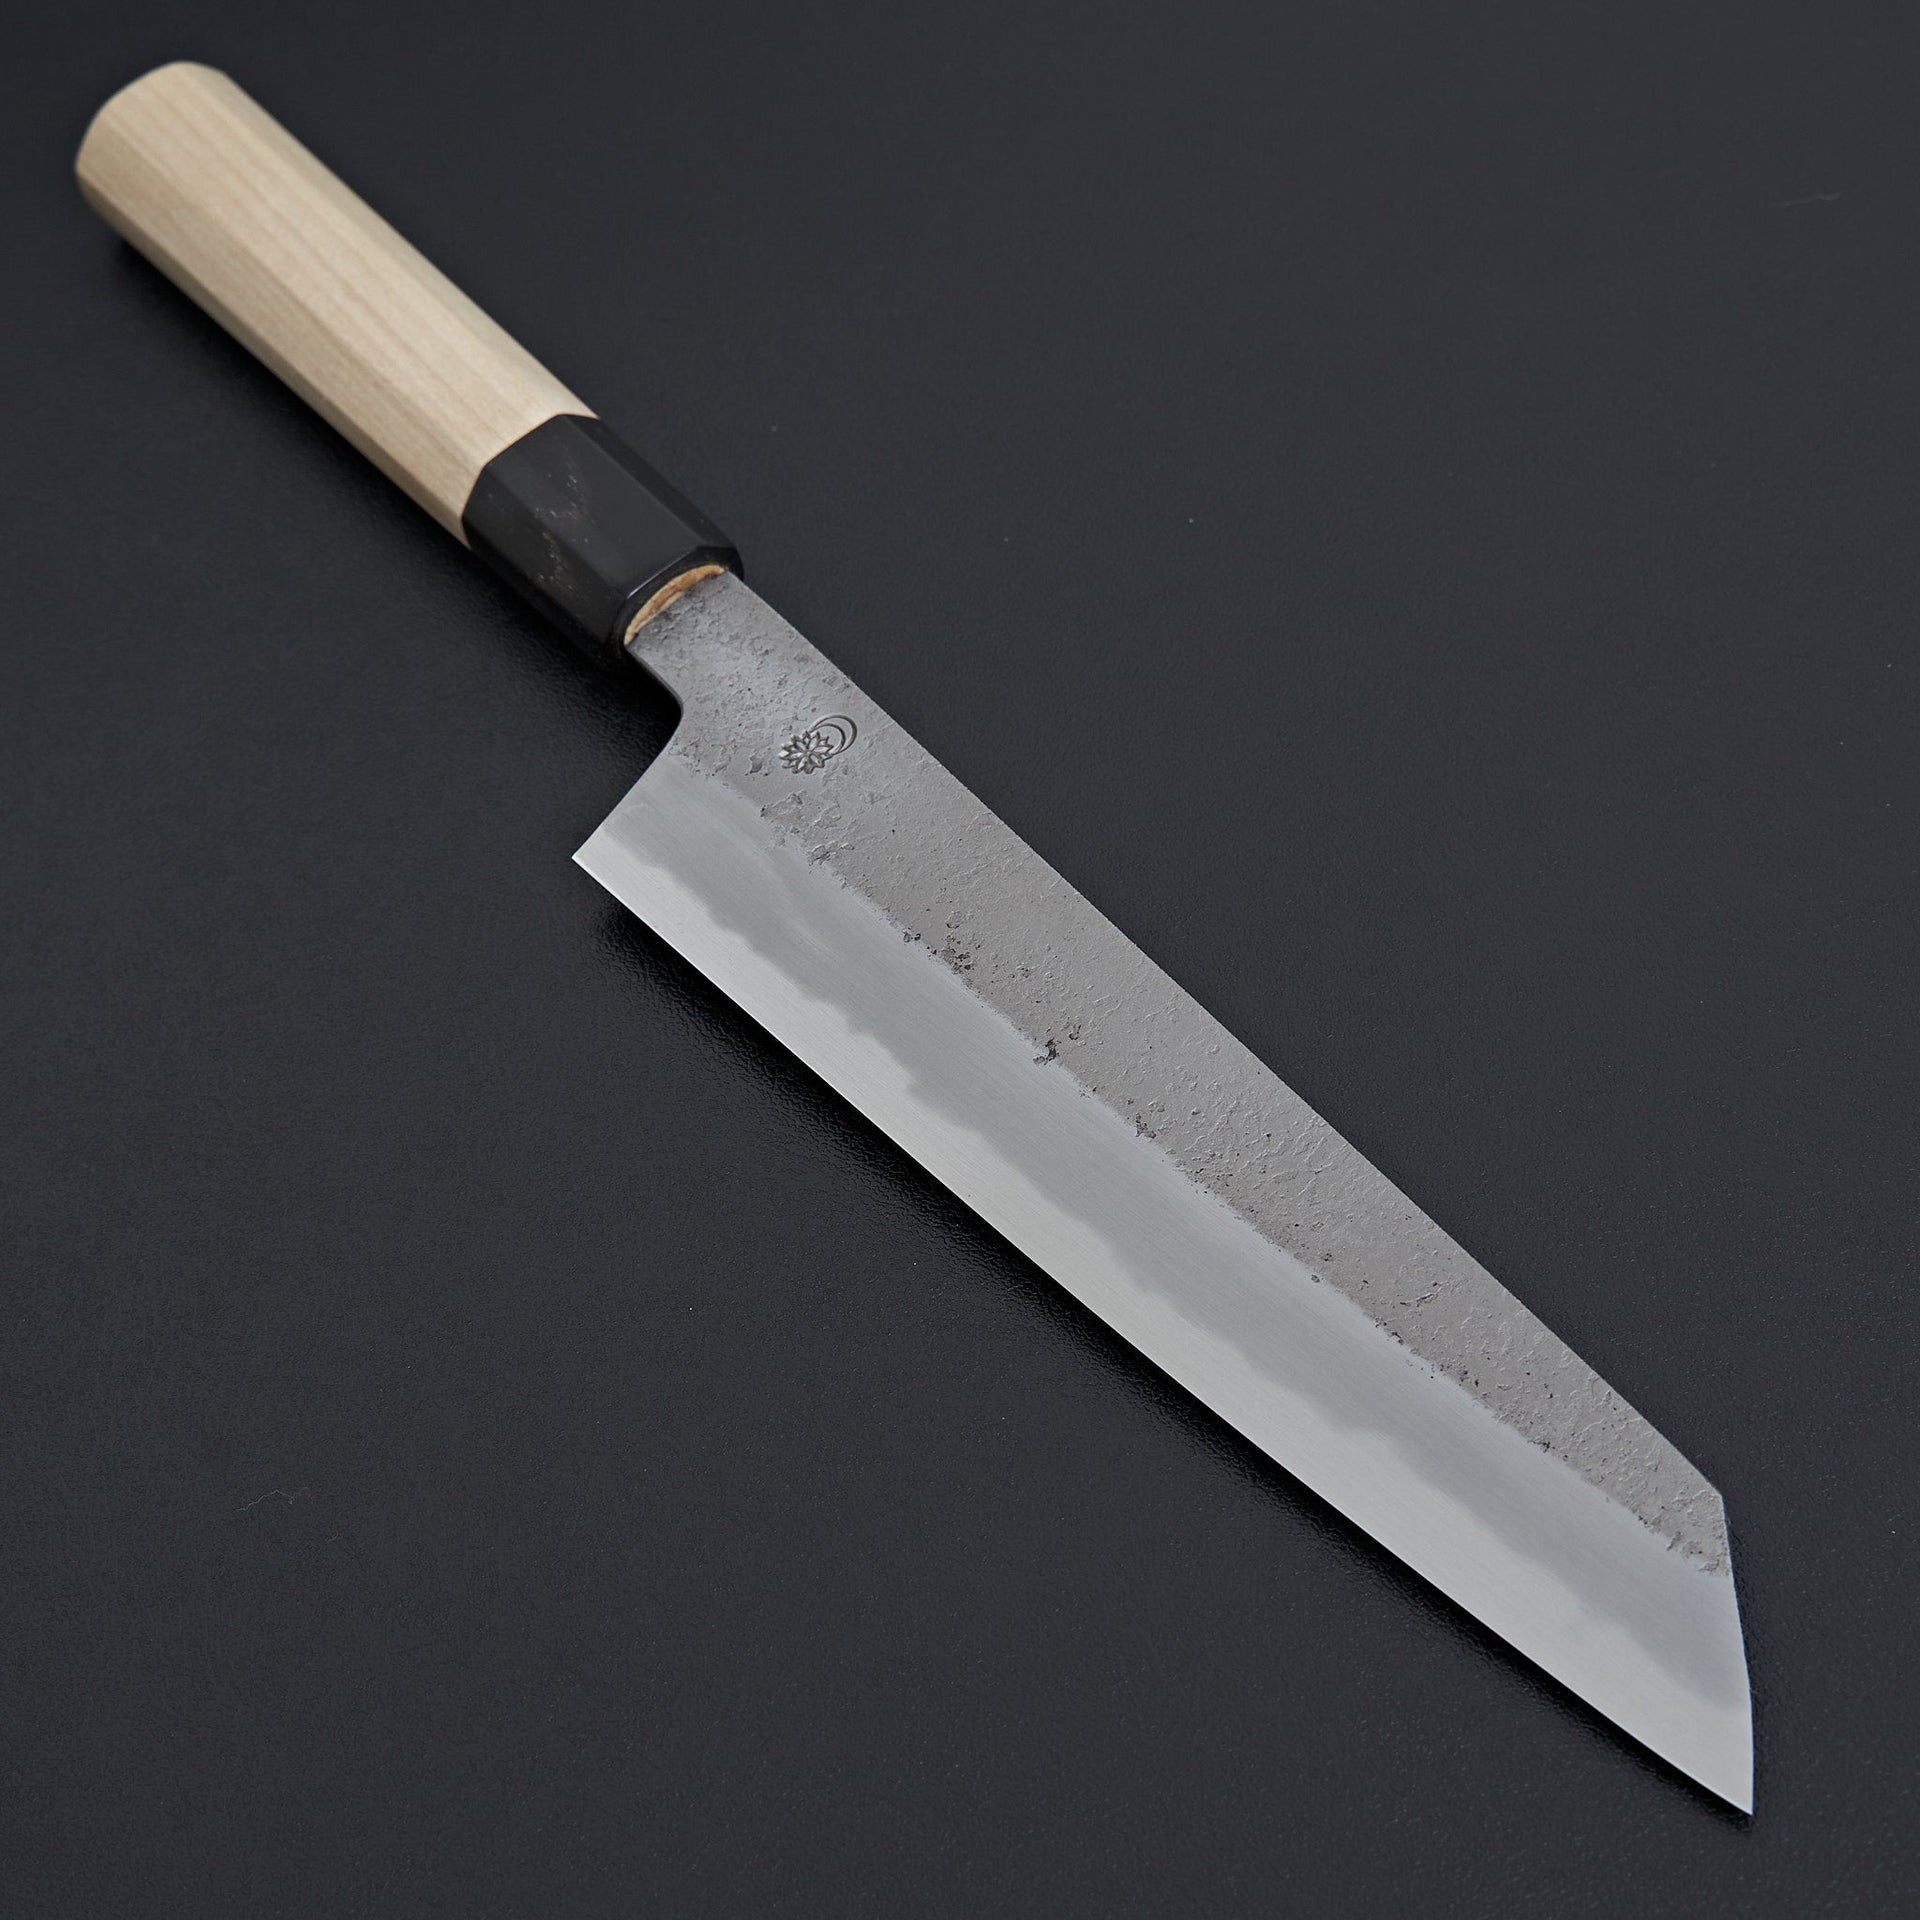 Sakai Kikumori Kikuzuki Rin Kiritsuke Gyuto 210mm-Knife-Sakai Kikumori-Carbon Knife Co